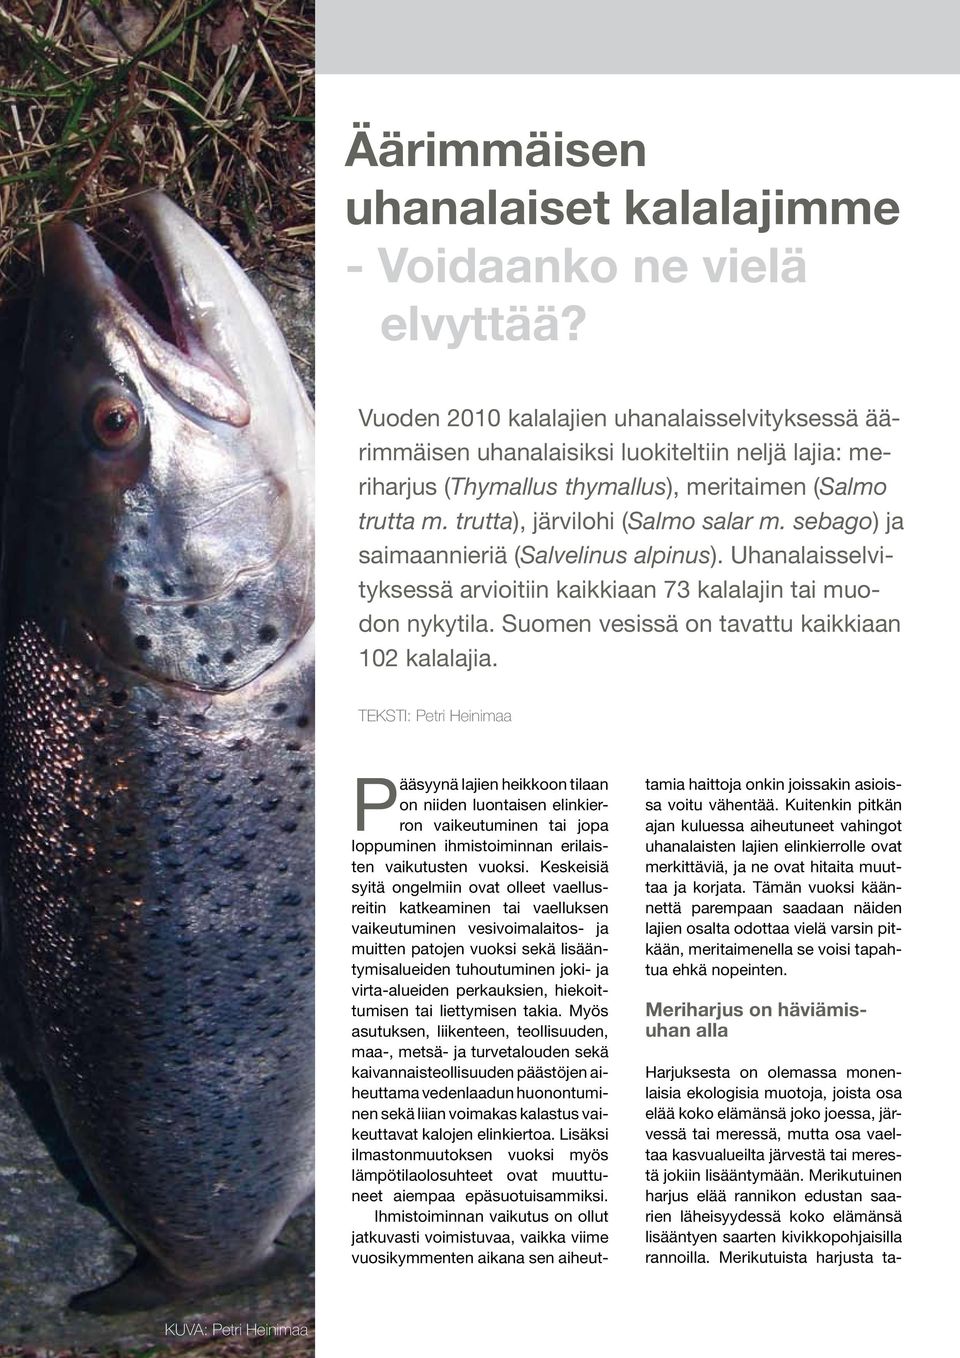 sebago) ja saimaannieriä (Salvelinus alpinus). Uhanalaisselvityksessä arvioitiin kaikkiaan 73 kalalajin tai muodon nykytila. Suomen vesissä on tavattu kaikkiaan 102 kalalajia.